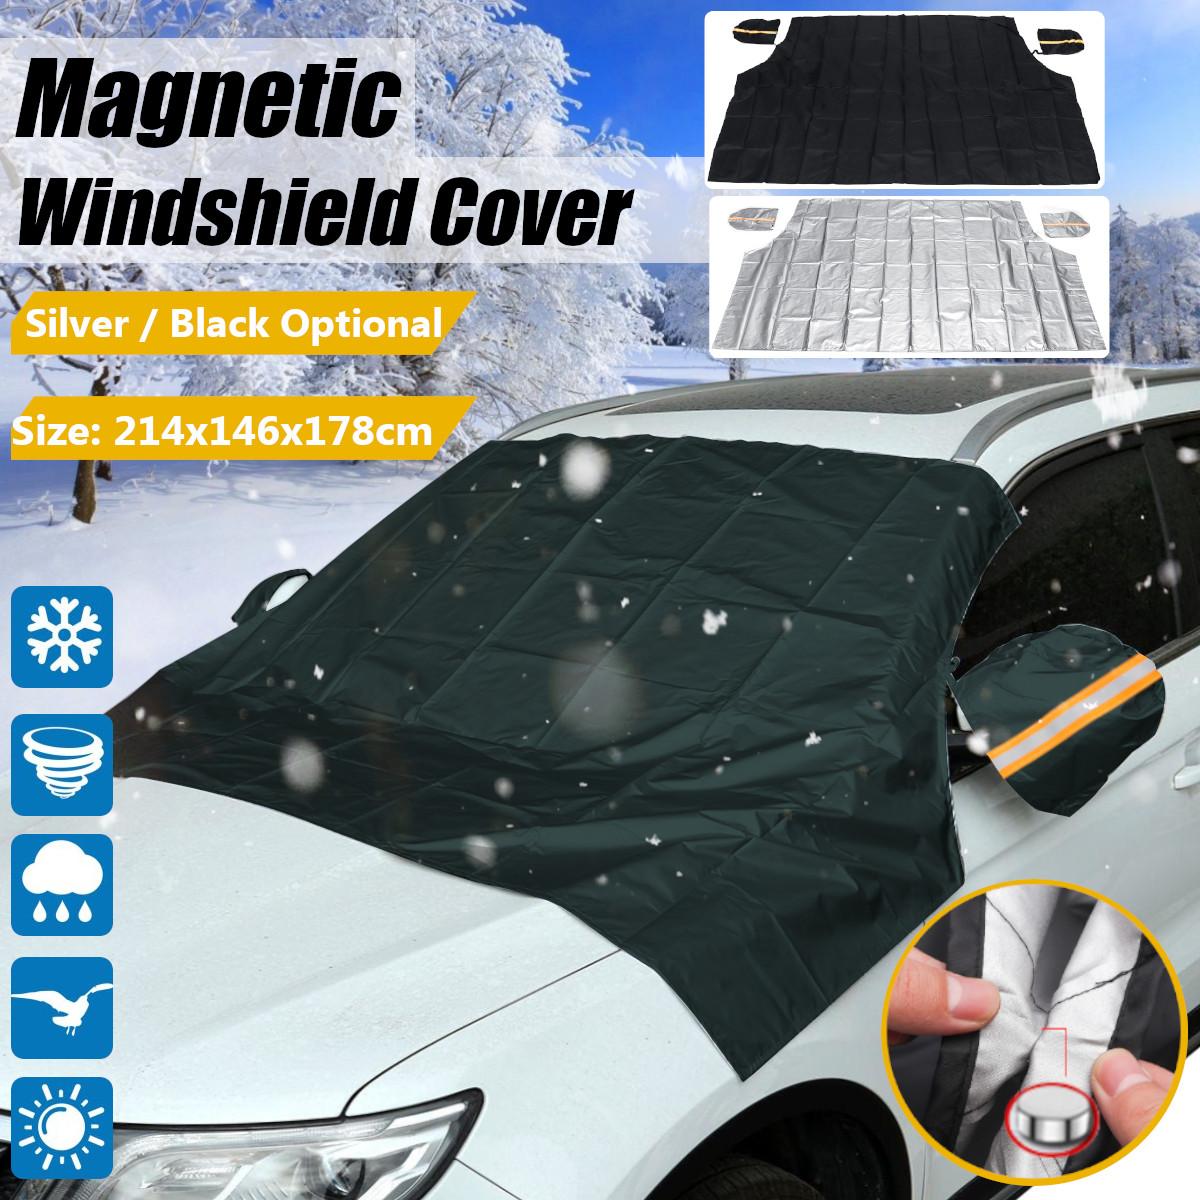 214 x 146 x 178cm bil magnetiske pickup lastbiler suv forrude sne sol støvdæksel is frost med spejl beskyttelses skjold